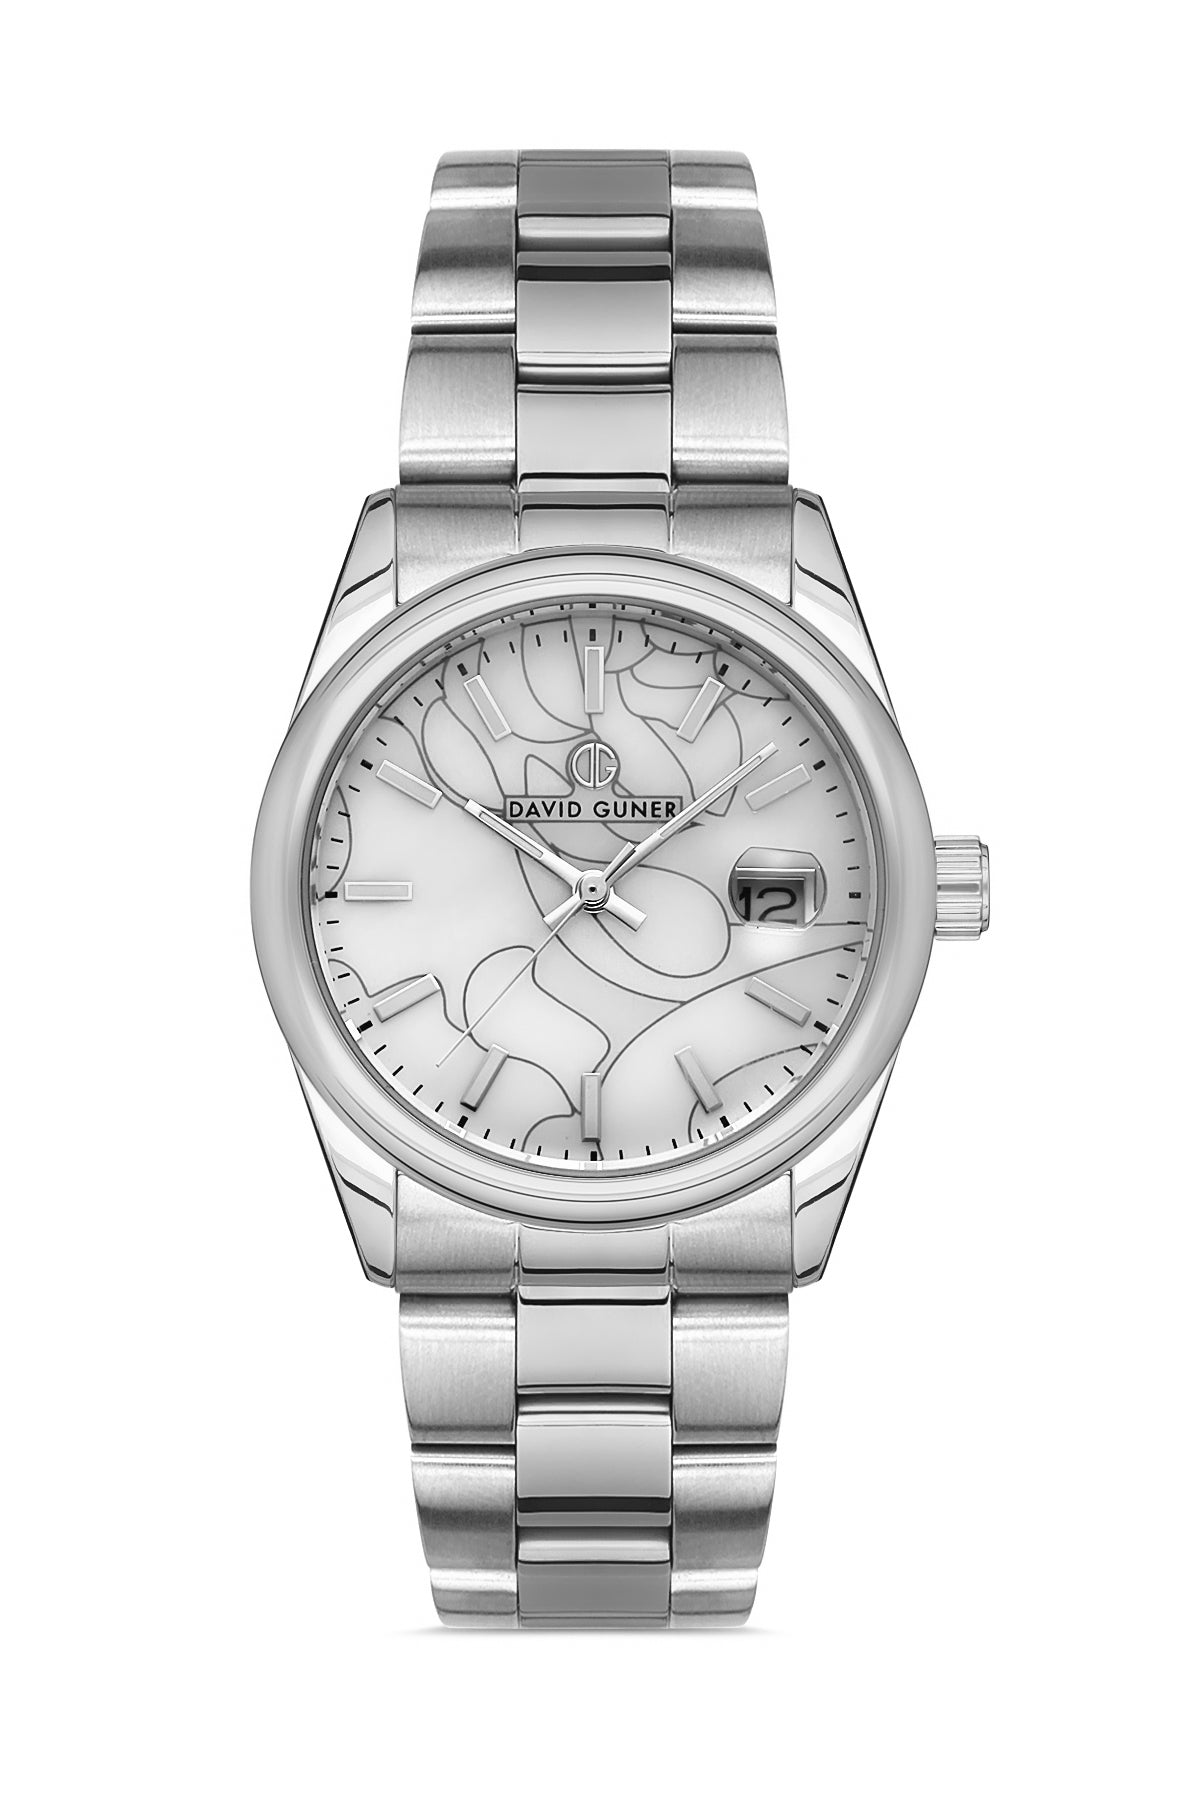 DAVID GUNER Silver Plated Women's Wristwatch with Calendar